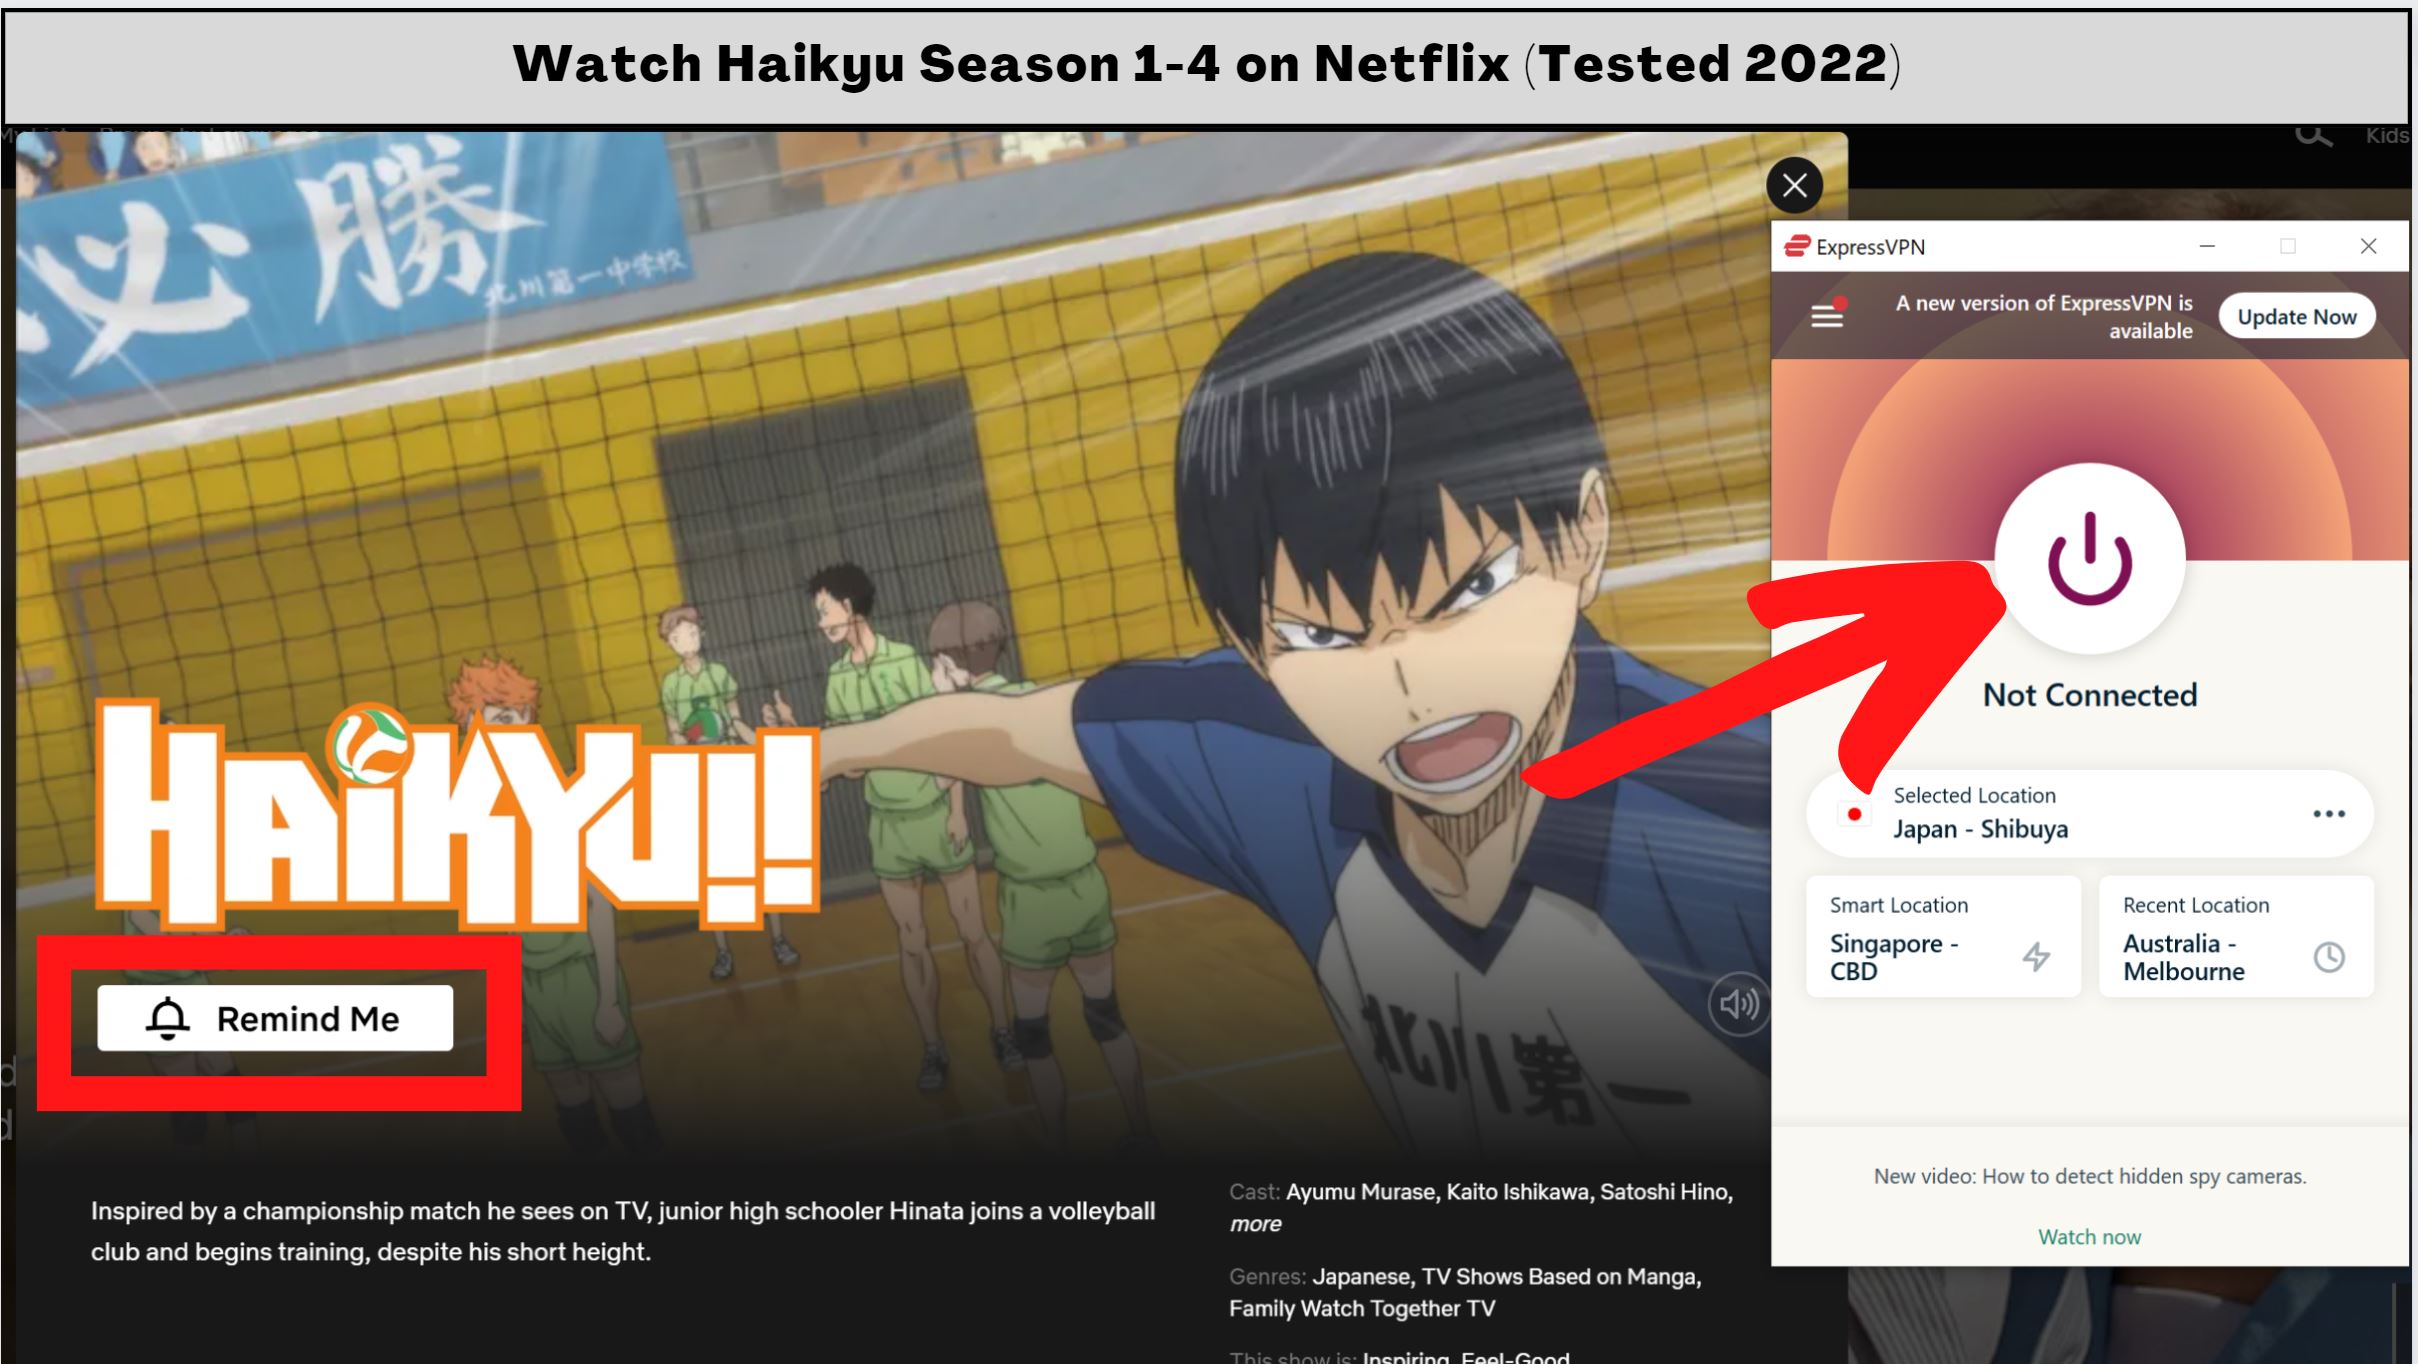 Watch Haikyu season 4 netflix